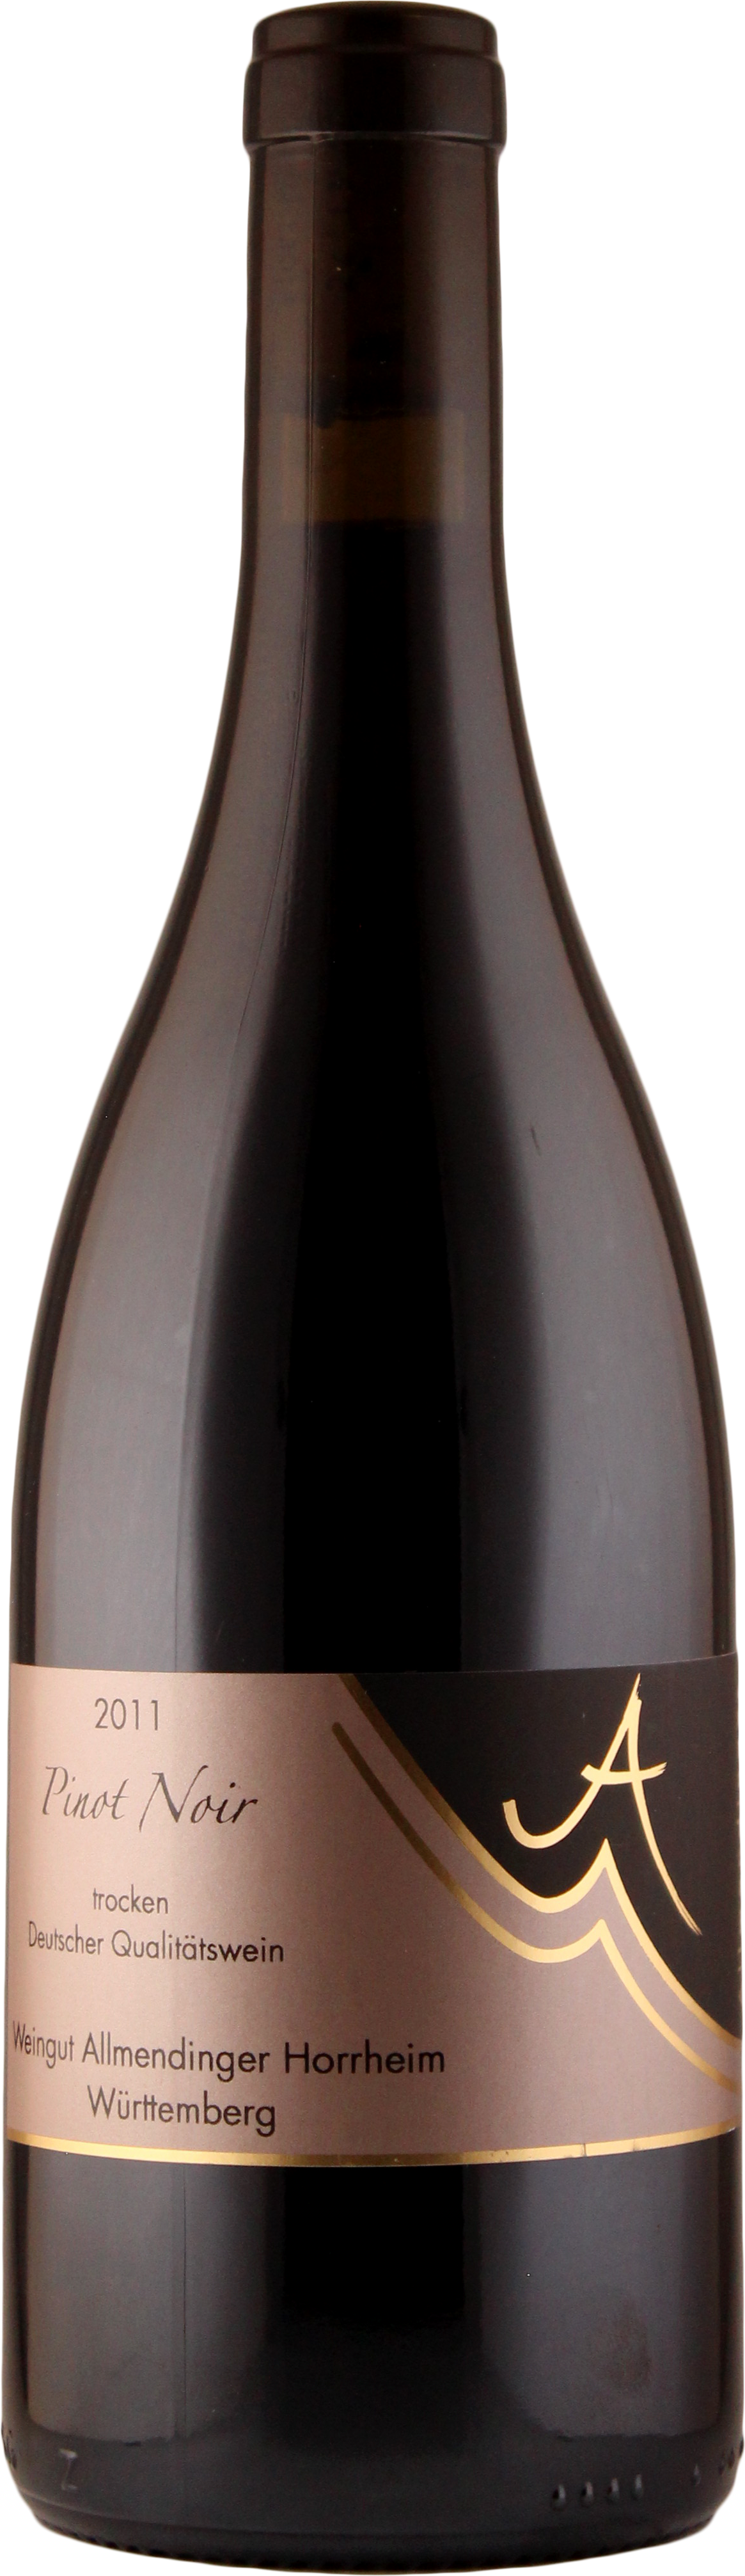 2011 Pinot Noir trocken 0,75 L - Weingut Allmendinger